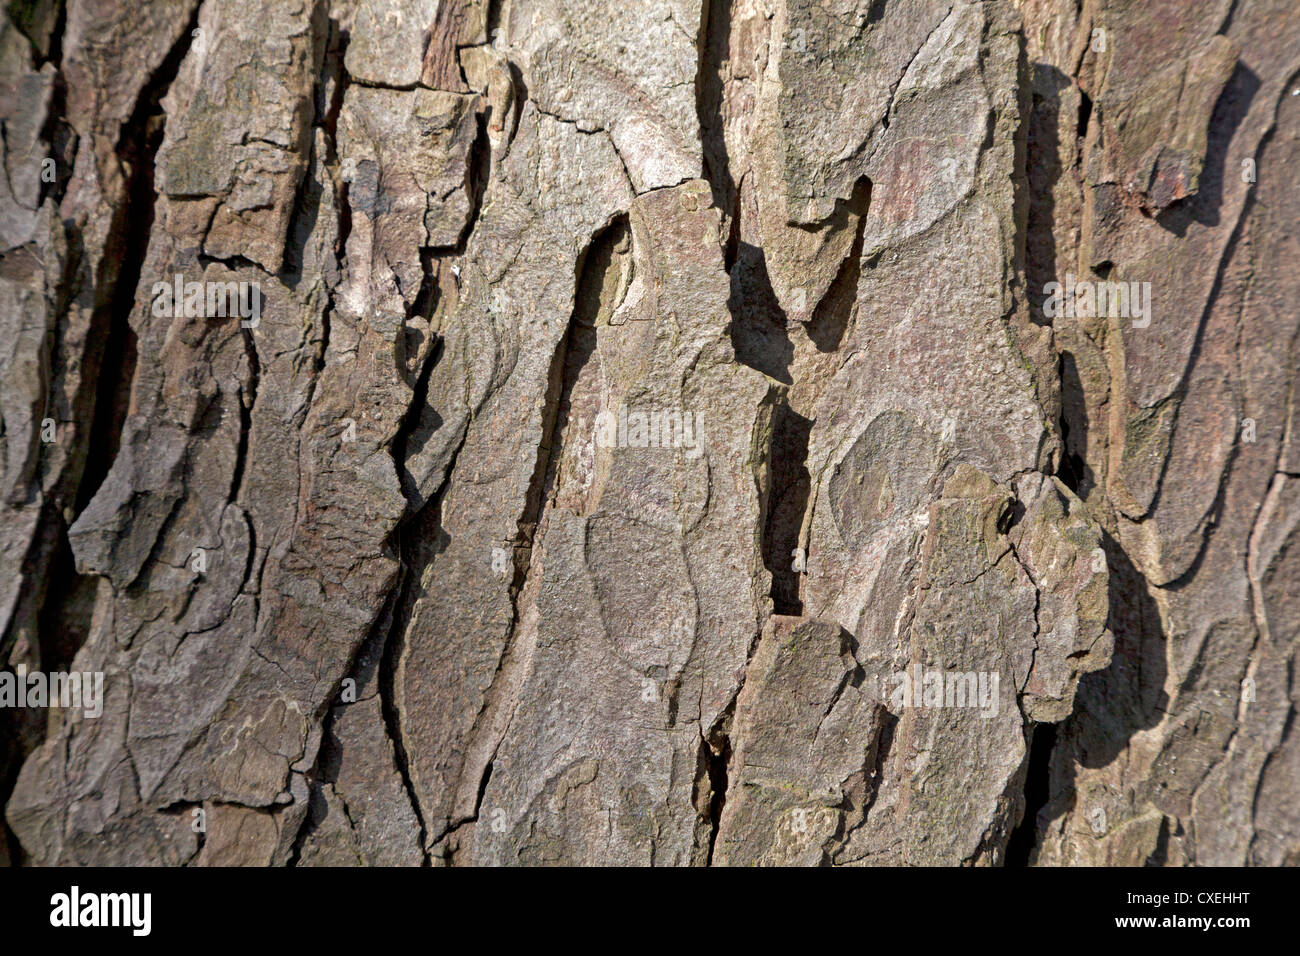 Tree bark of a chestnut Stock Photo